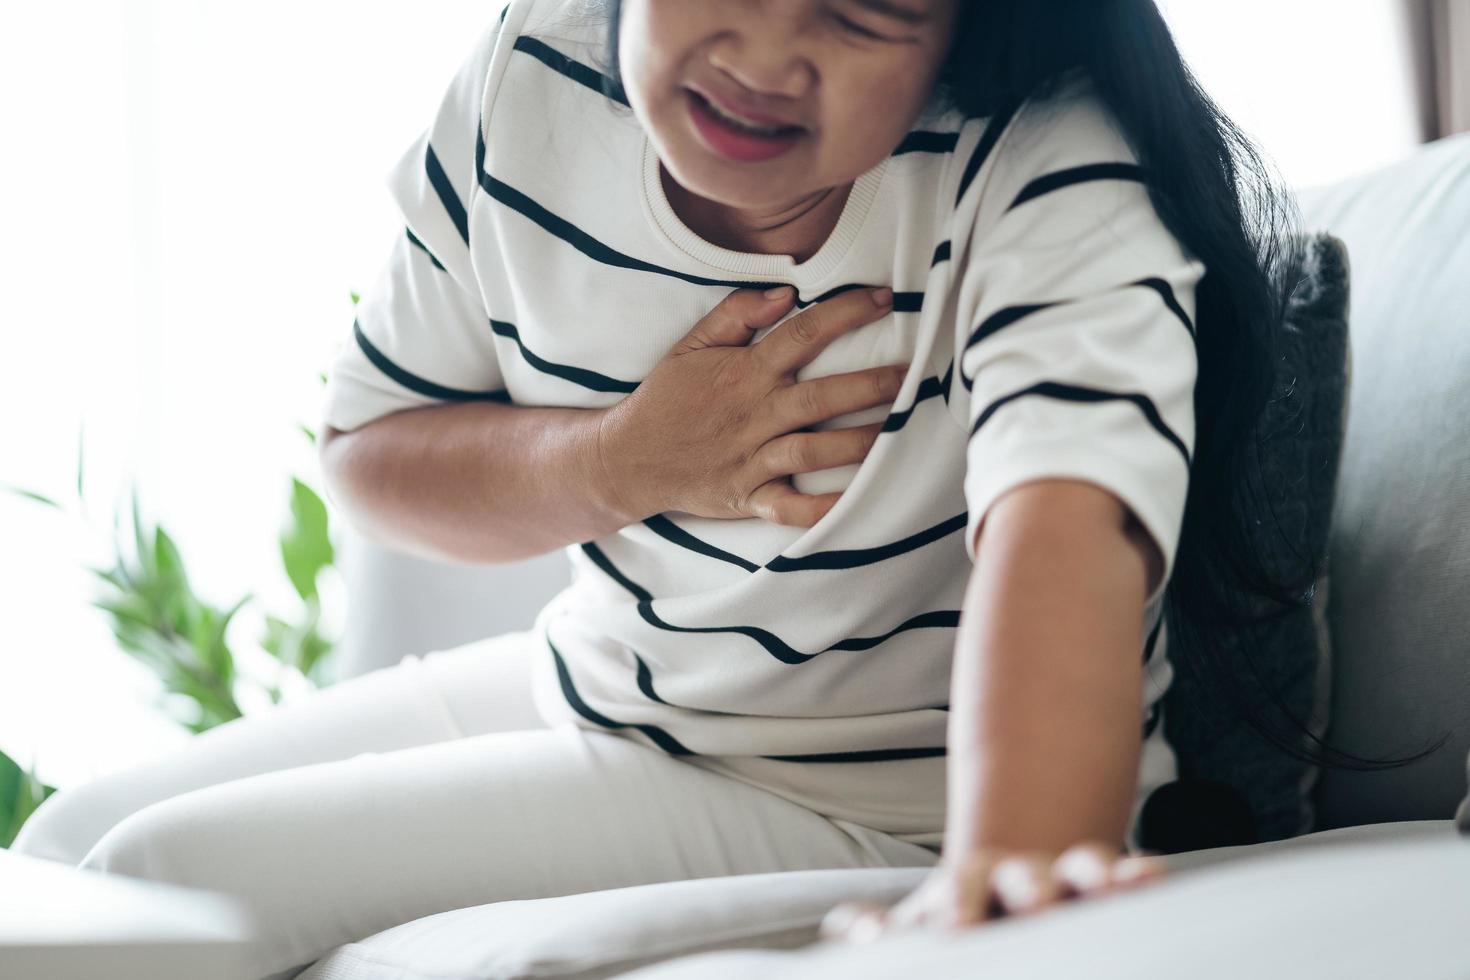 closeup de mulher asiática tendo ataque cardíaco. mulher tocando o peito e com dor no peito. cuidados de saúde e conceito médico. foto